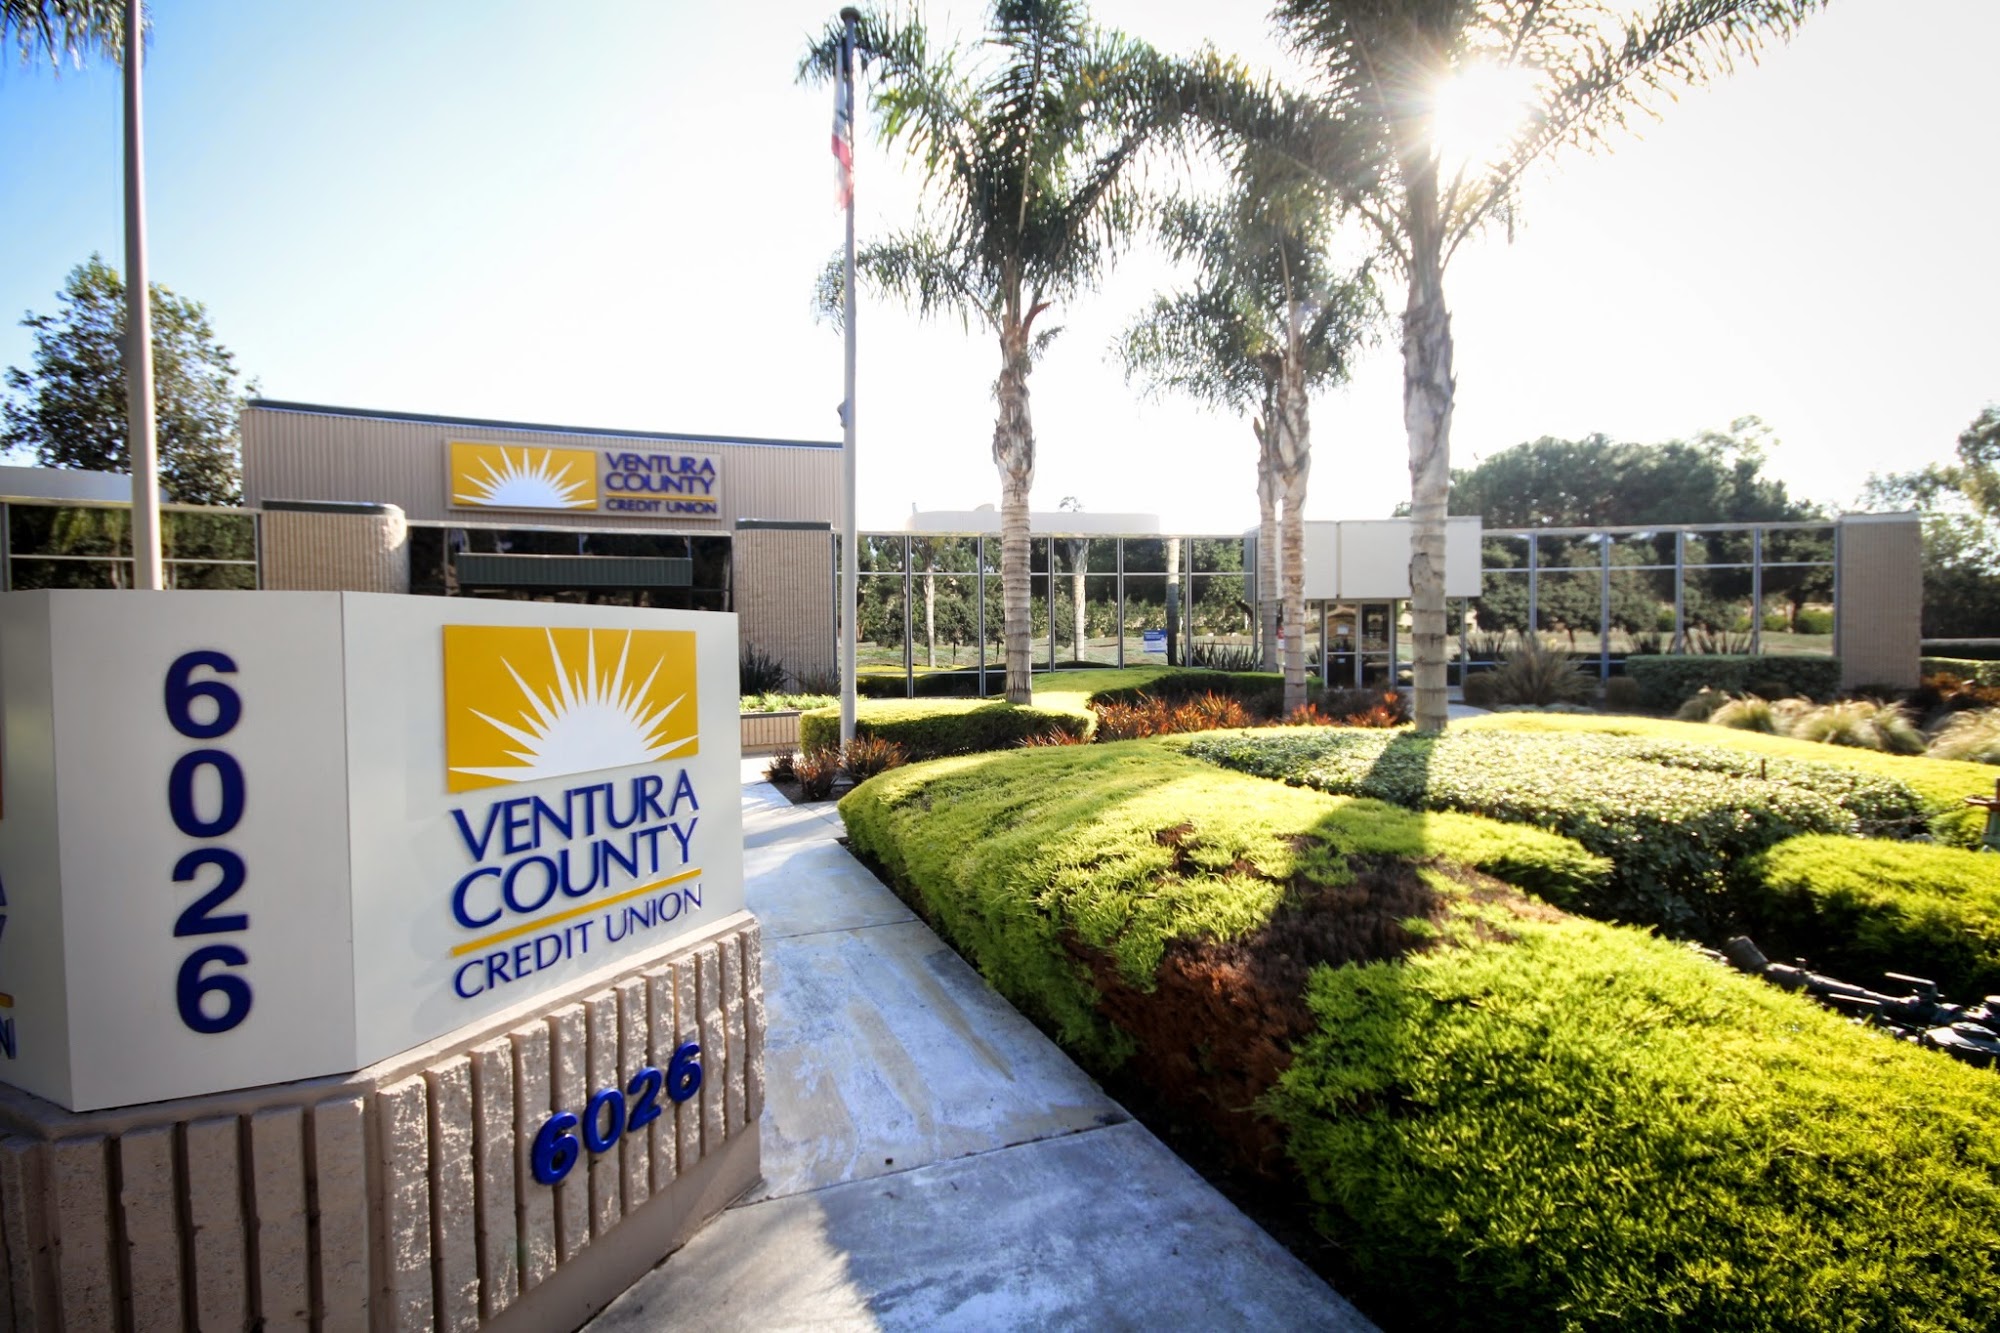 Ventura County Credit Union - Ventura